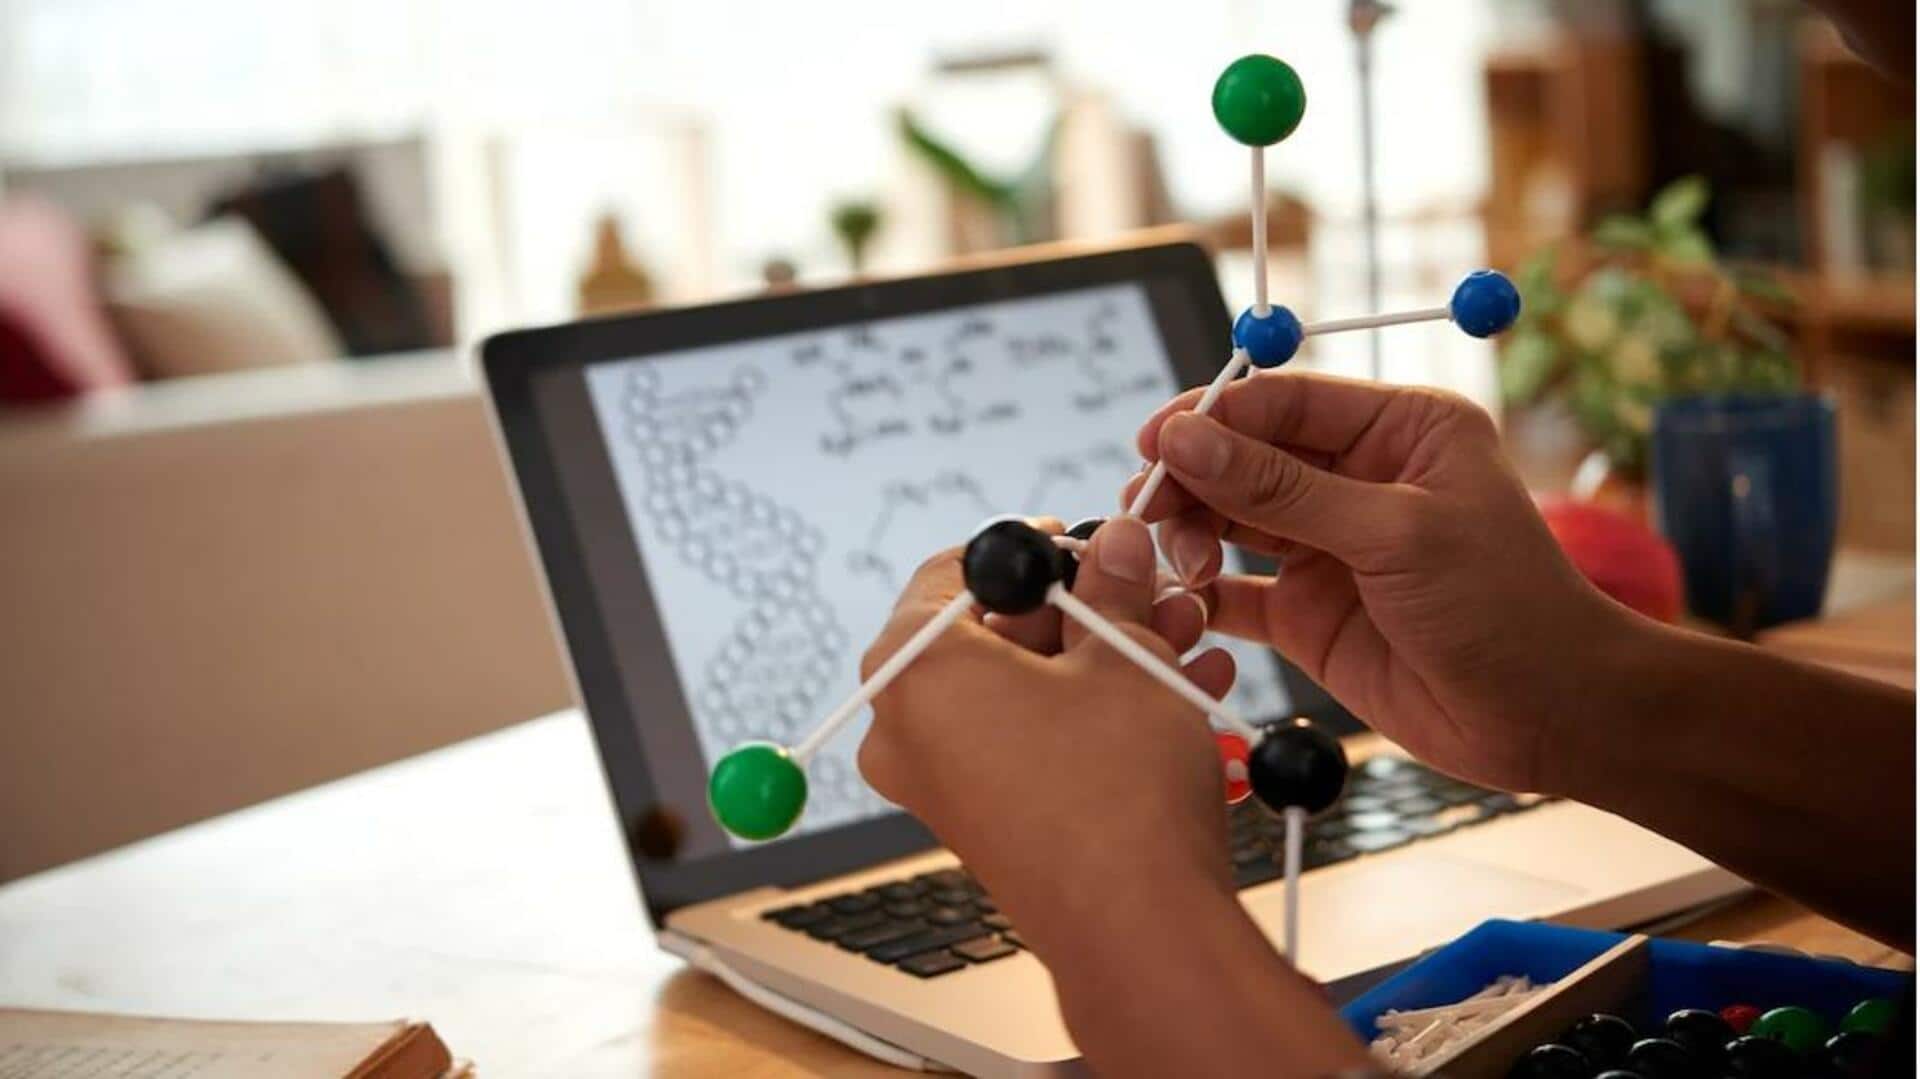 मध्य प्रदेश बोर्ड परीक्षा: 12वीं के छात्र ऐसे करें रसायन विज्ञान के पेपर की तैयारी